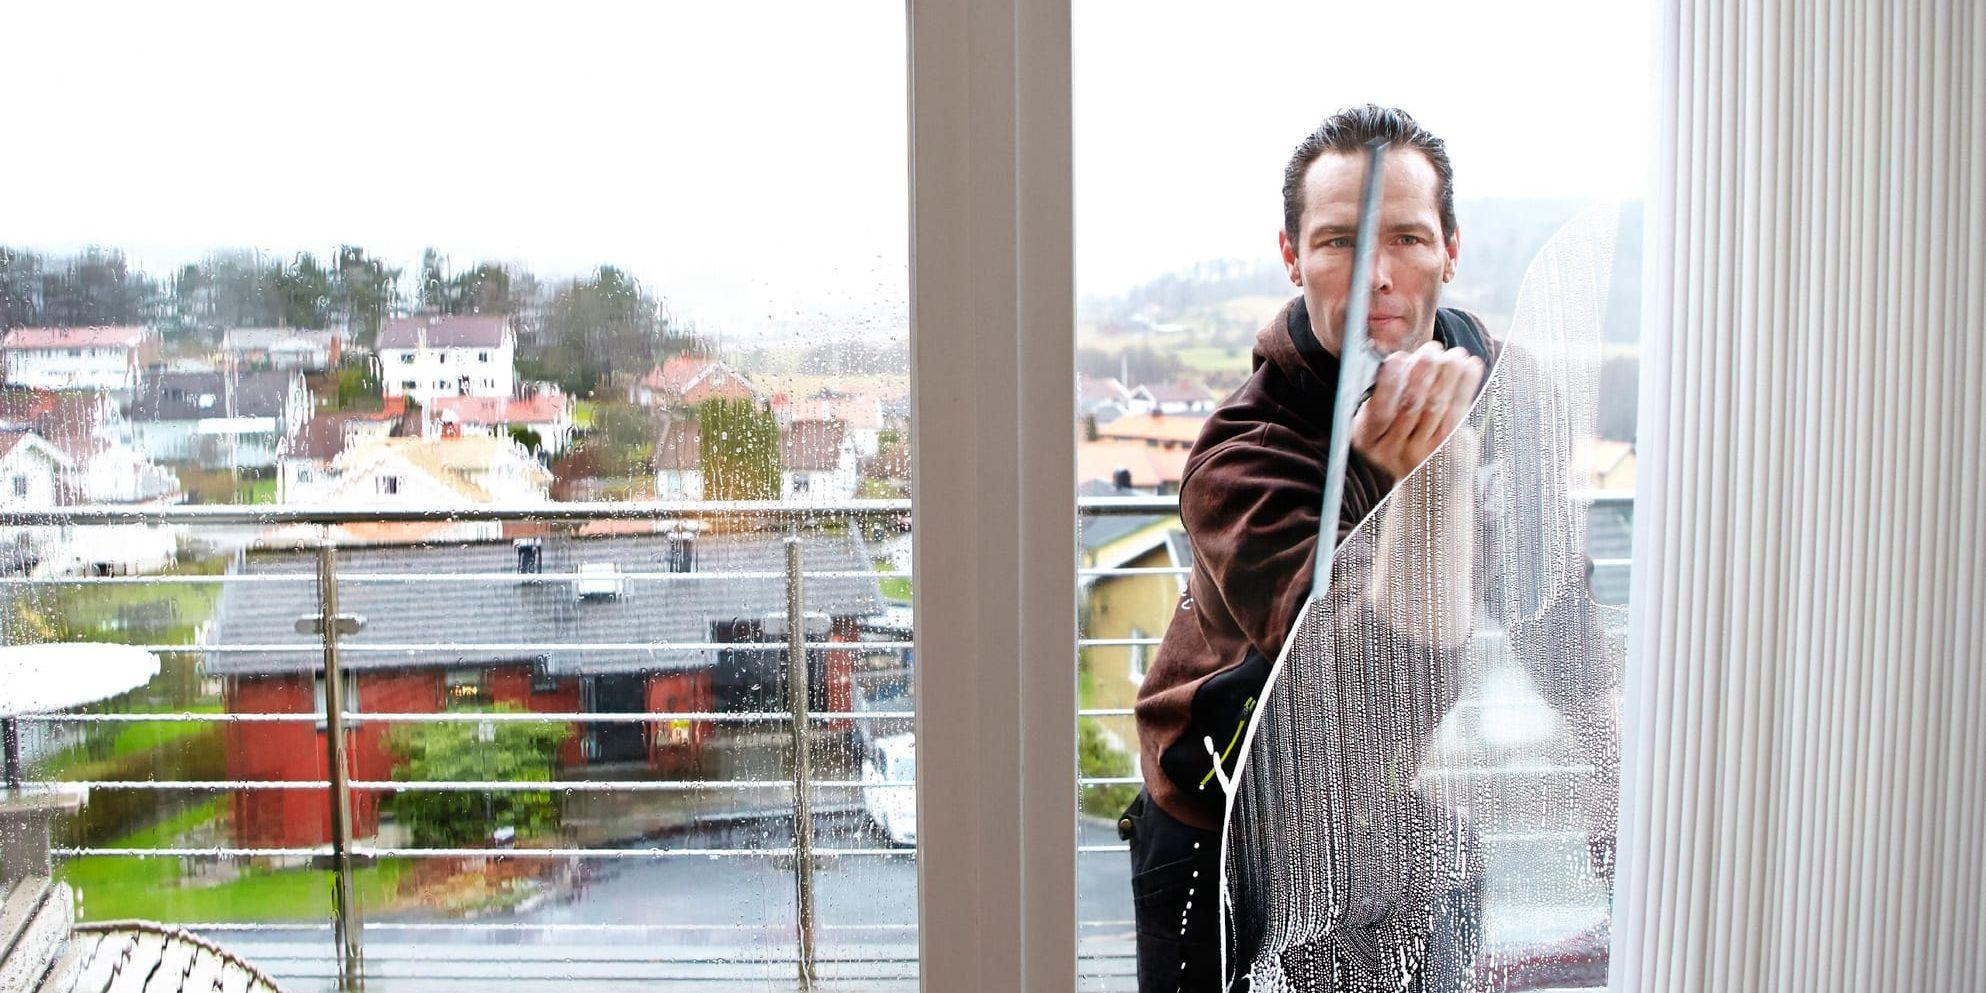 Både professionella fönsterputsare och amatörer jobbar för fullt så här års. Här är det Tobias Jansson från firman Putsa som fixar rutorna åt en kund.